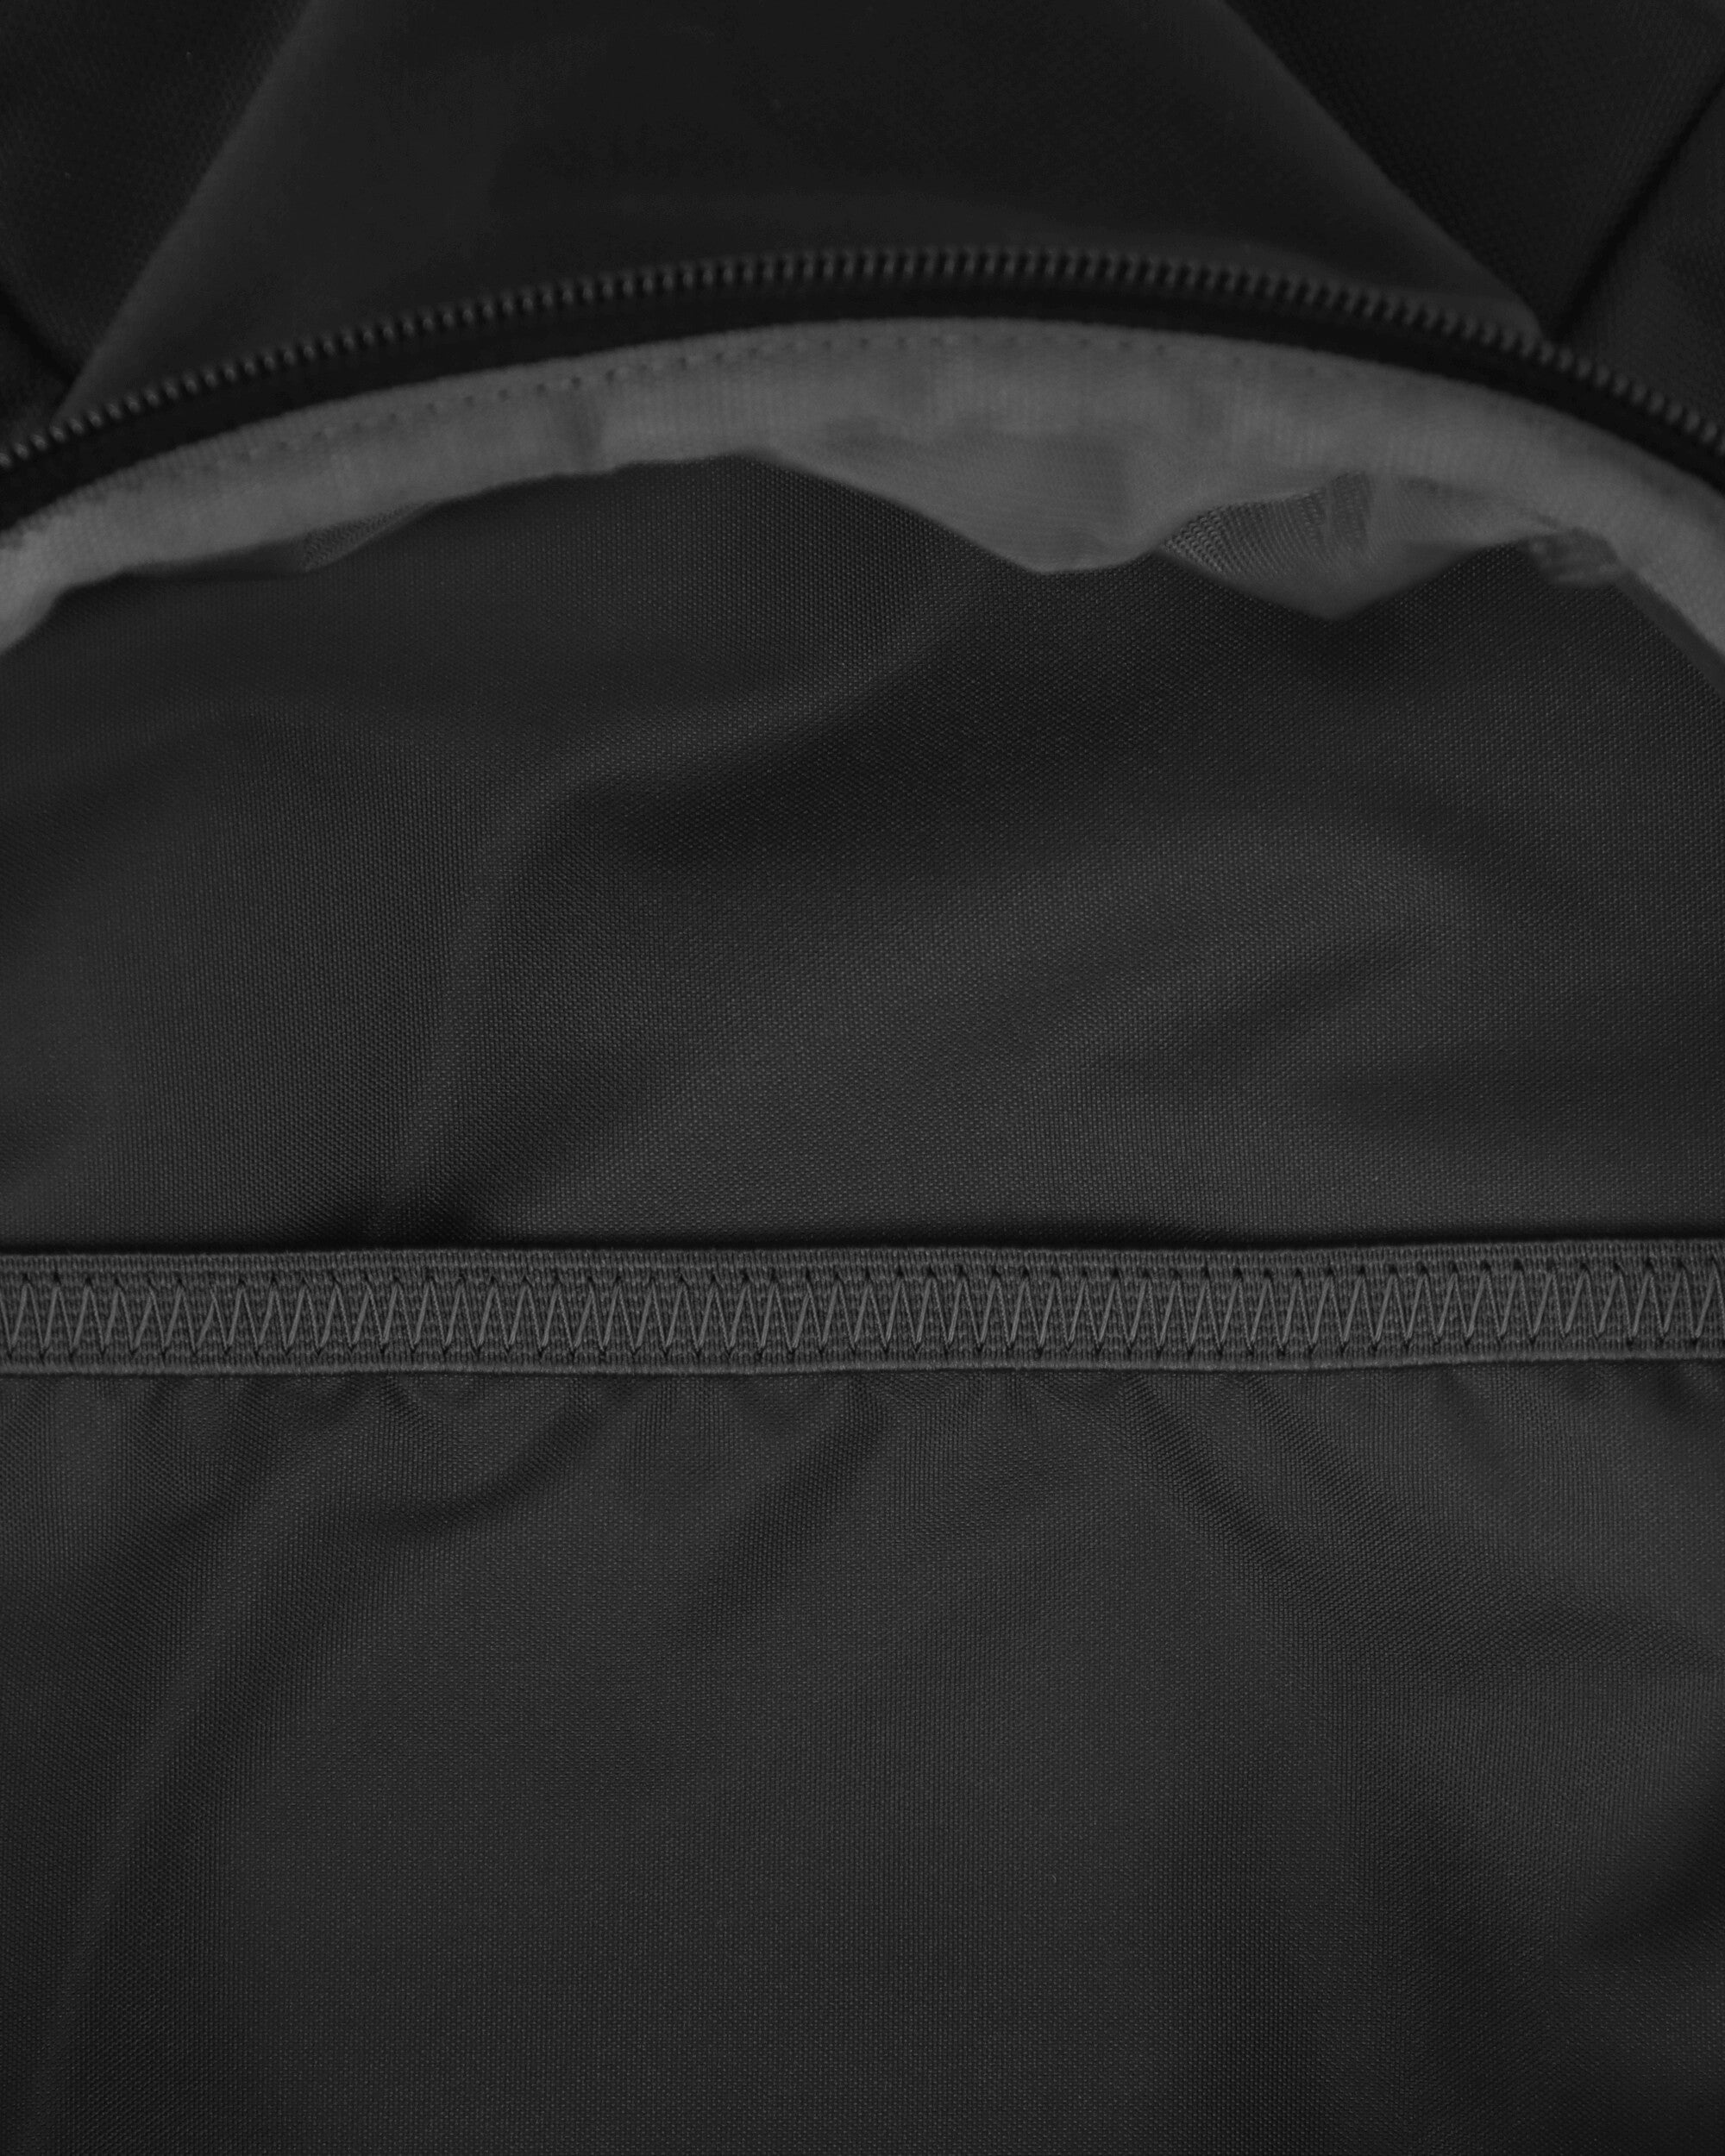 Nike Nk Air Grx Bkpk Black/Iron Grey Bags and Backpacks Backpacks DV6246-010